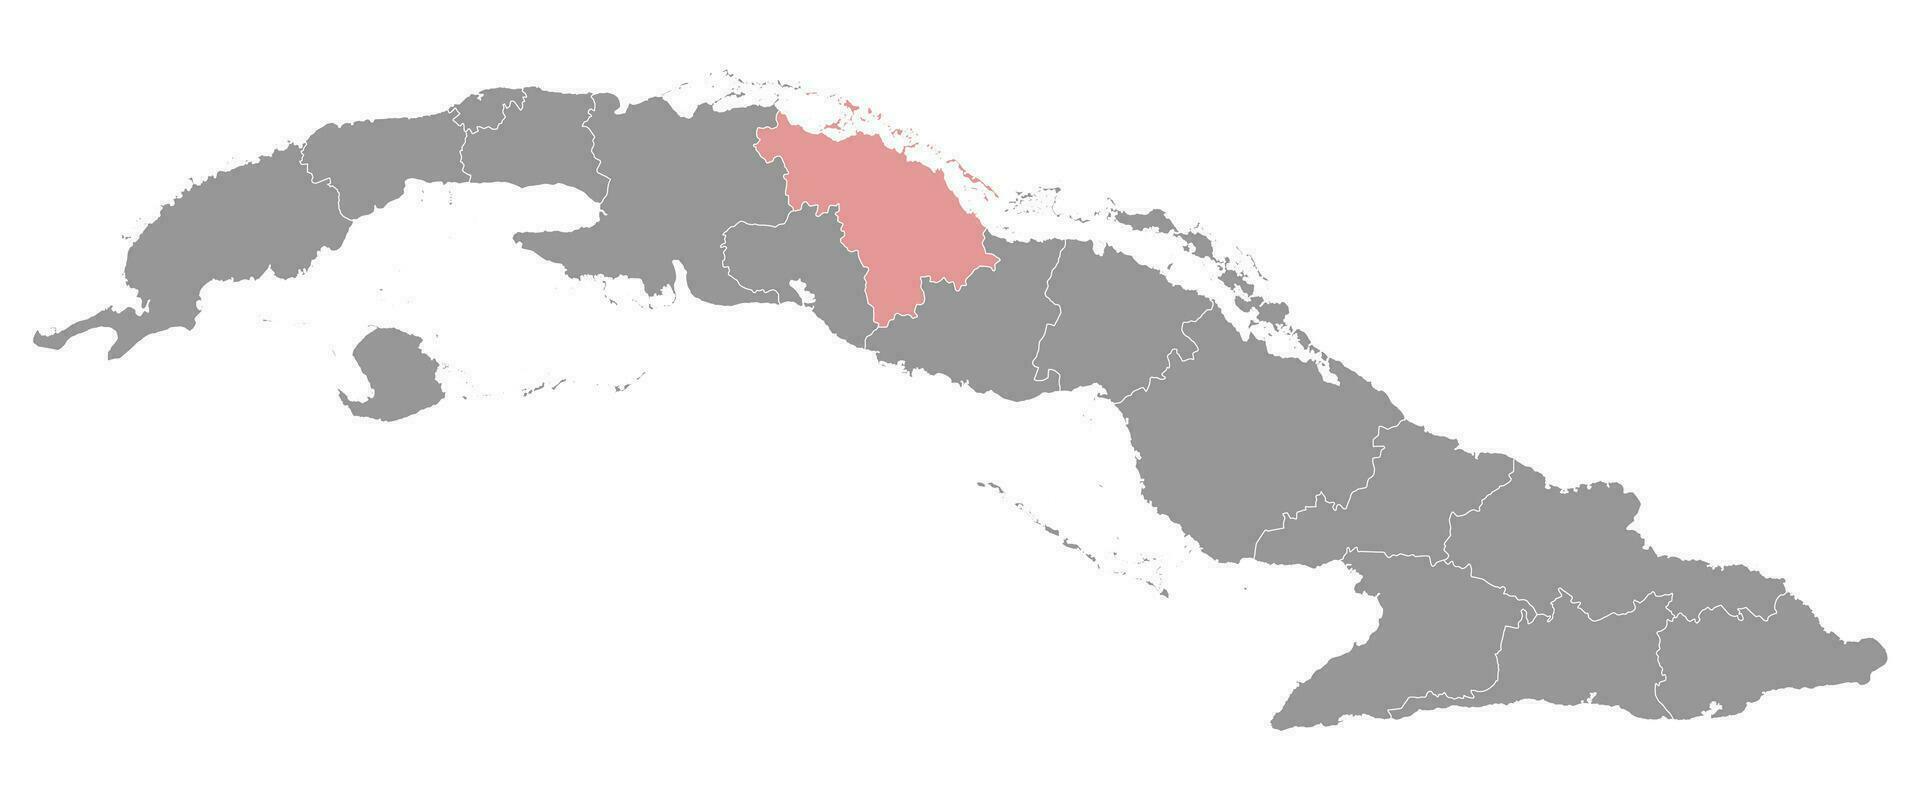 villa clara Province carte, administratif division de Cuba. vecteur illustration.